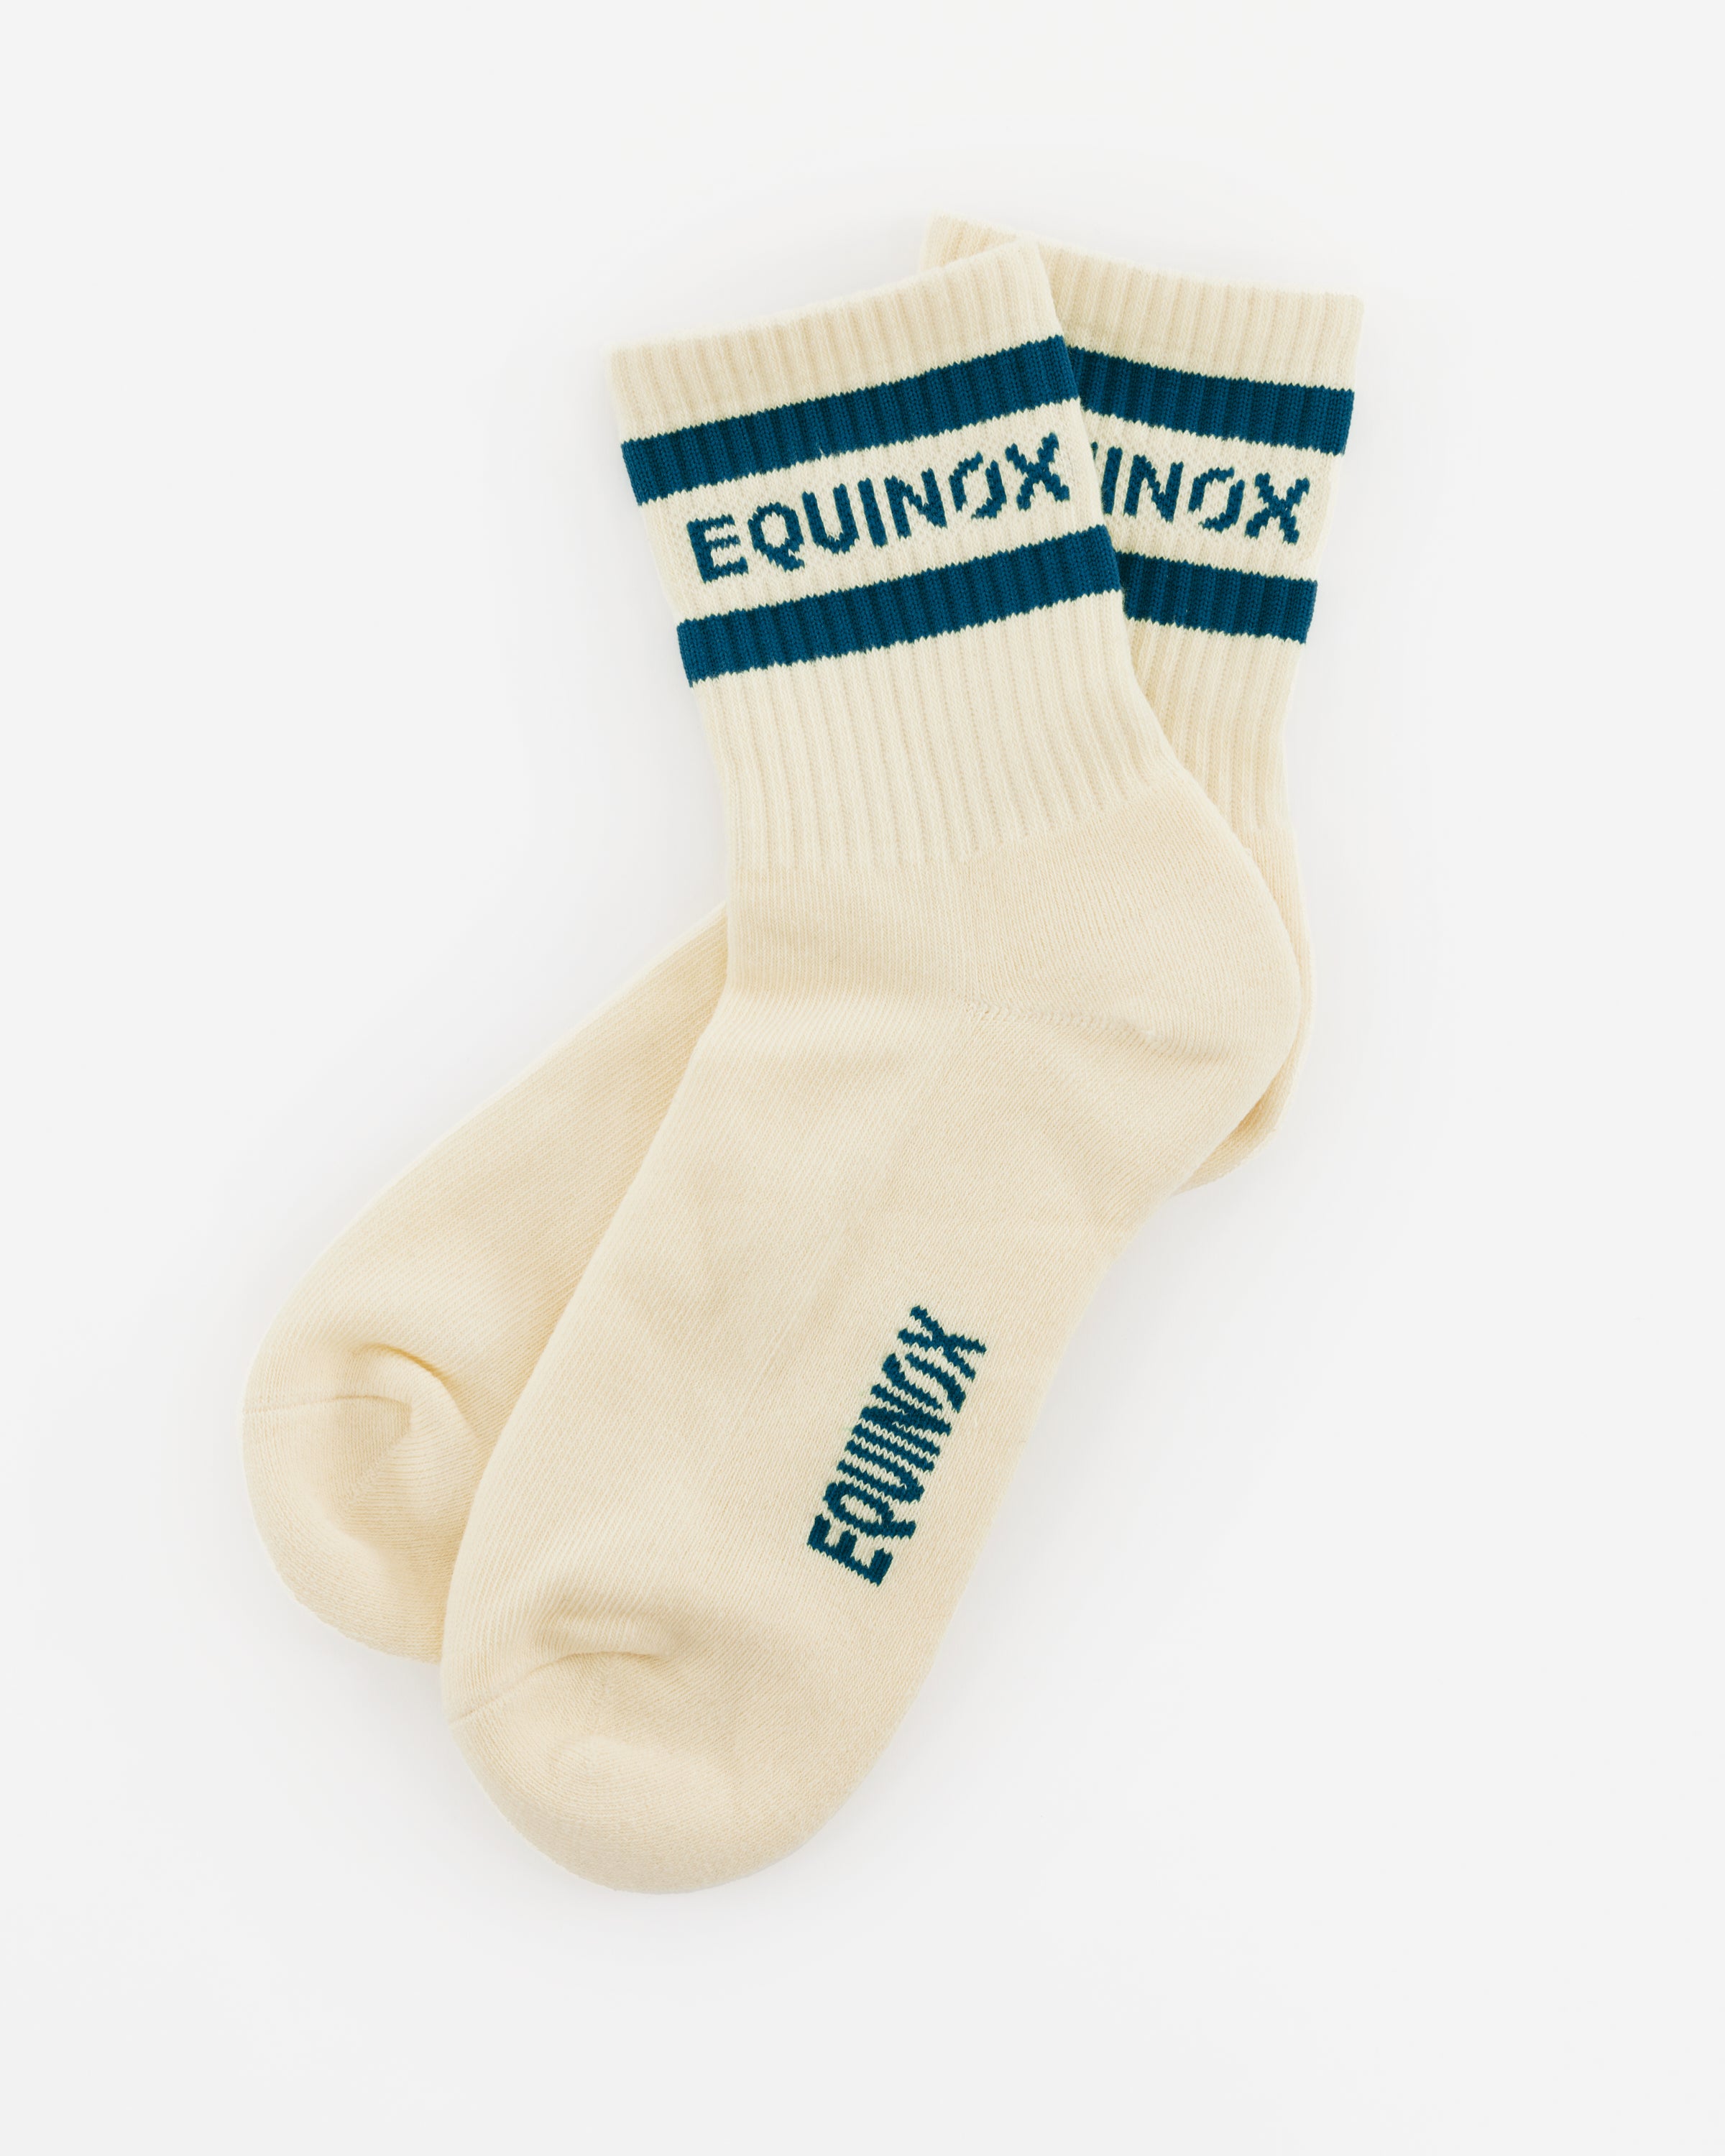 Socks – The Shop at Equinox